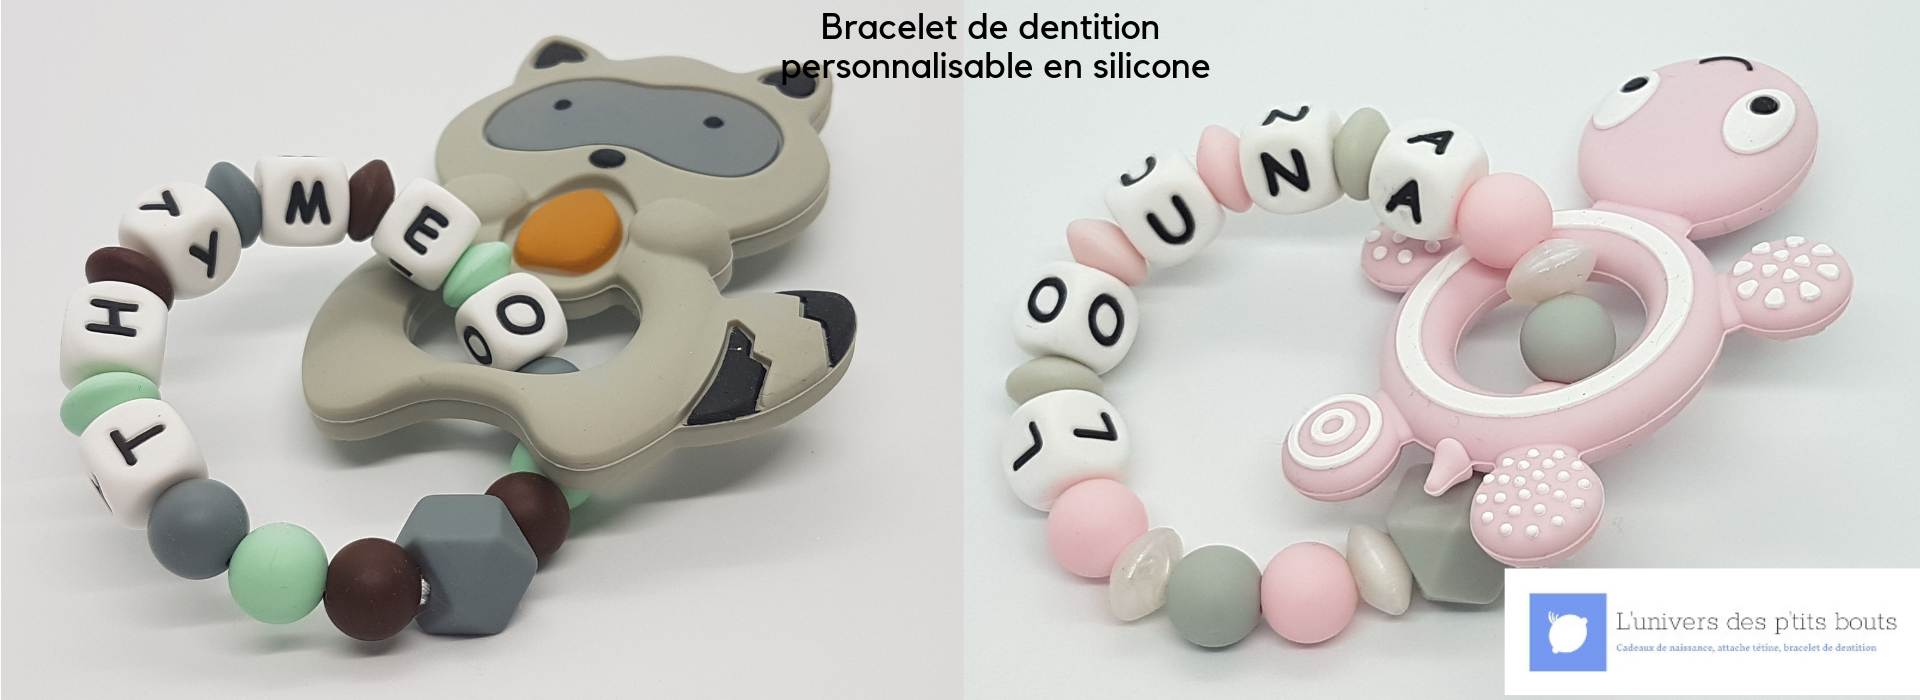 Bracelet de dentition personnalisable en silicone